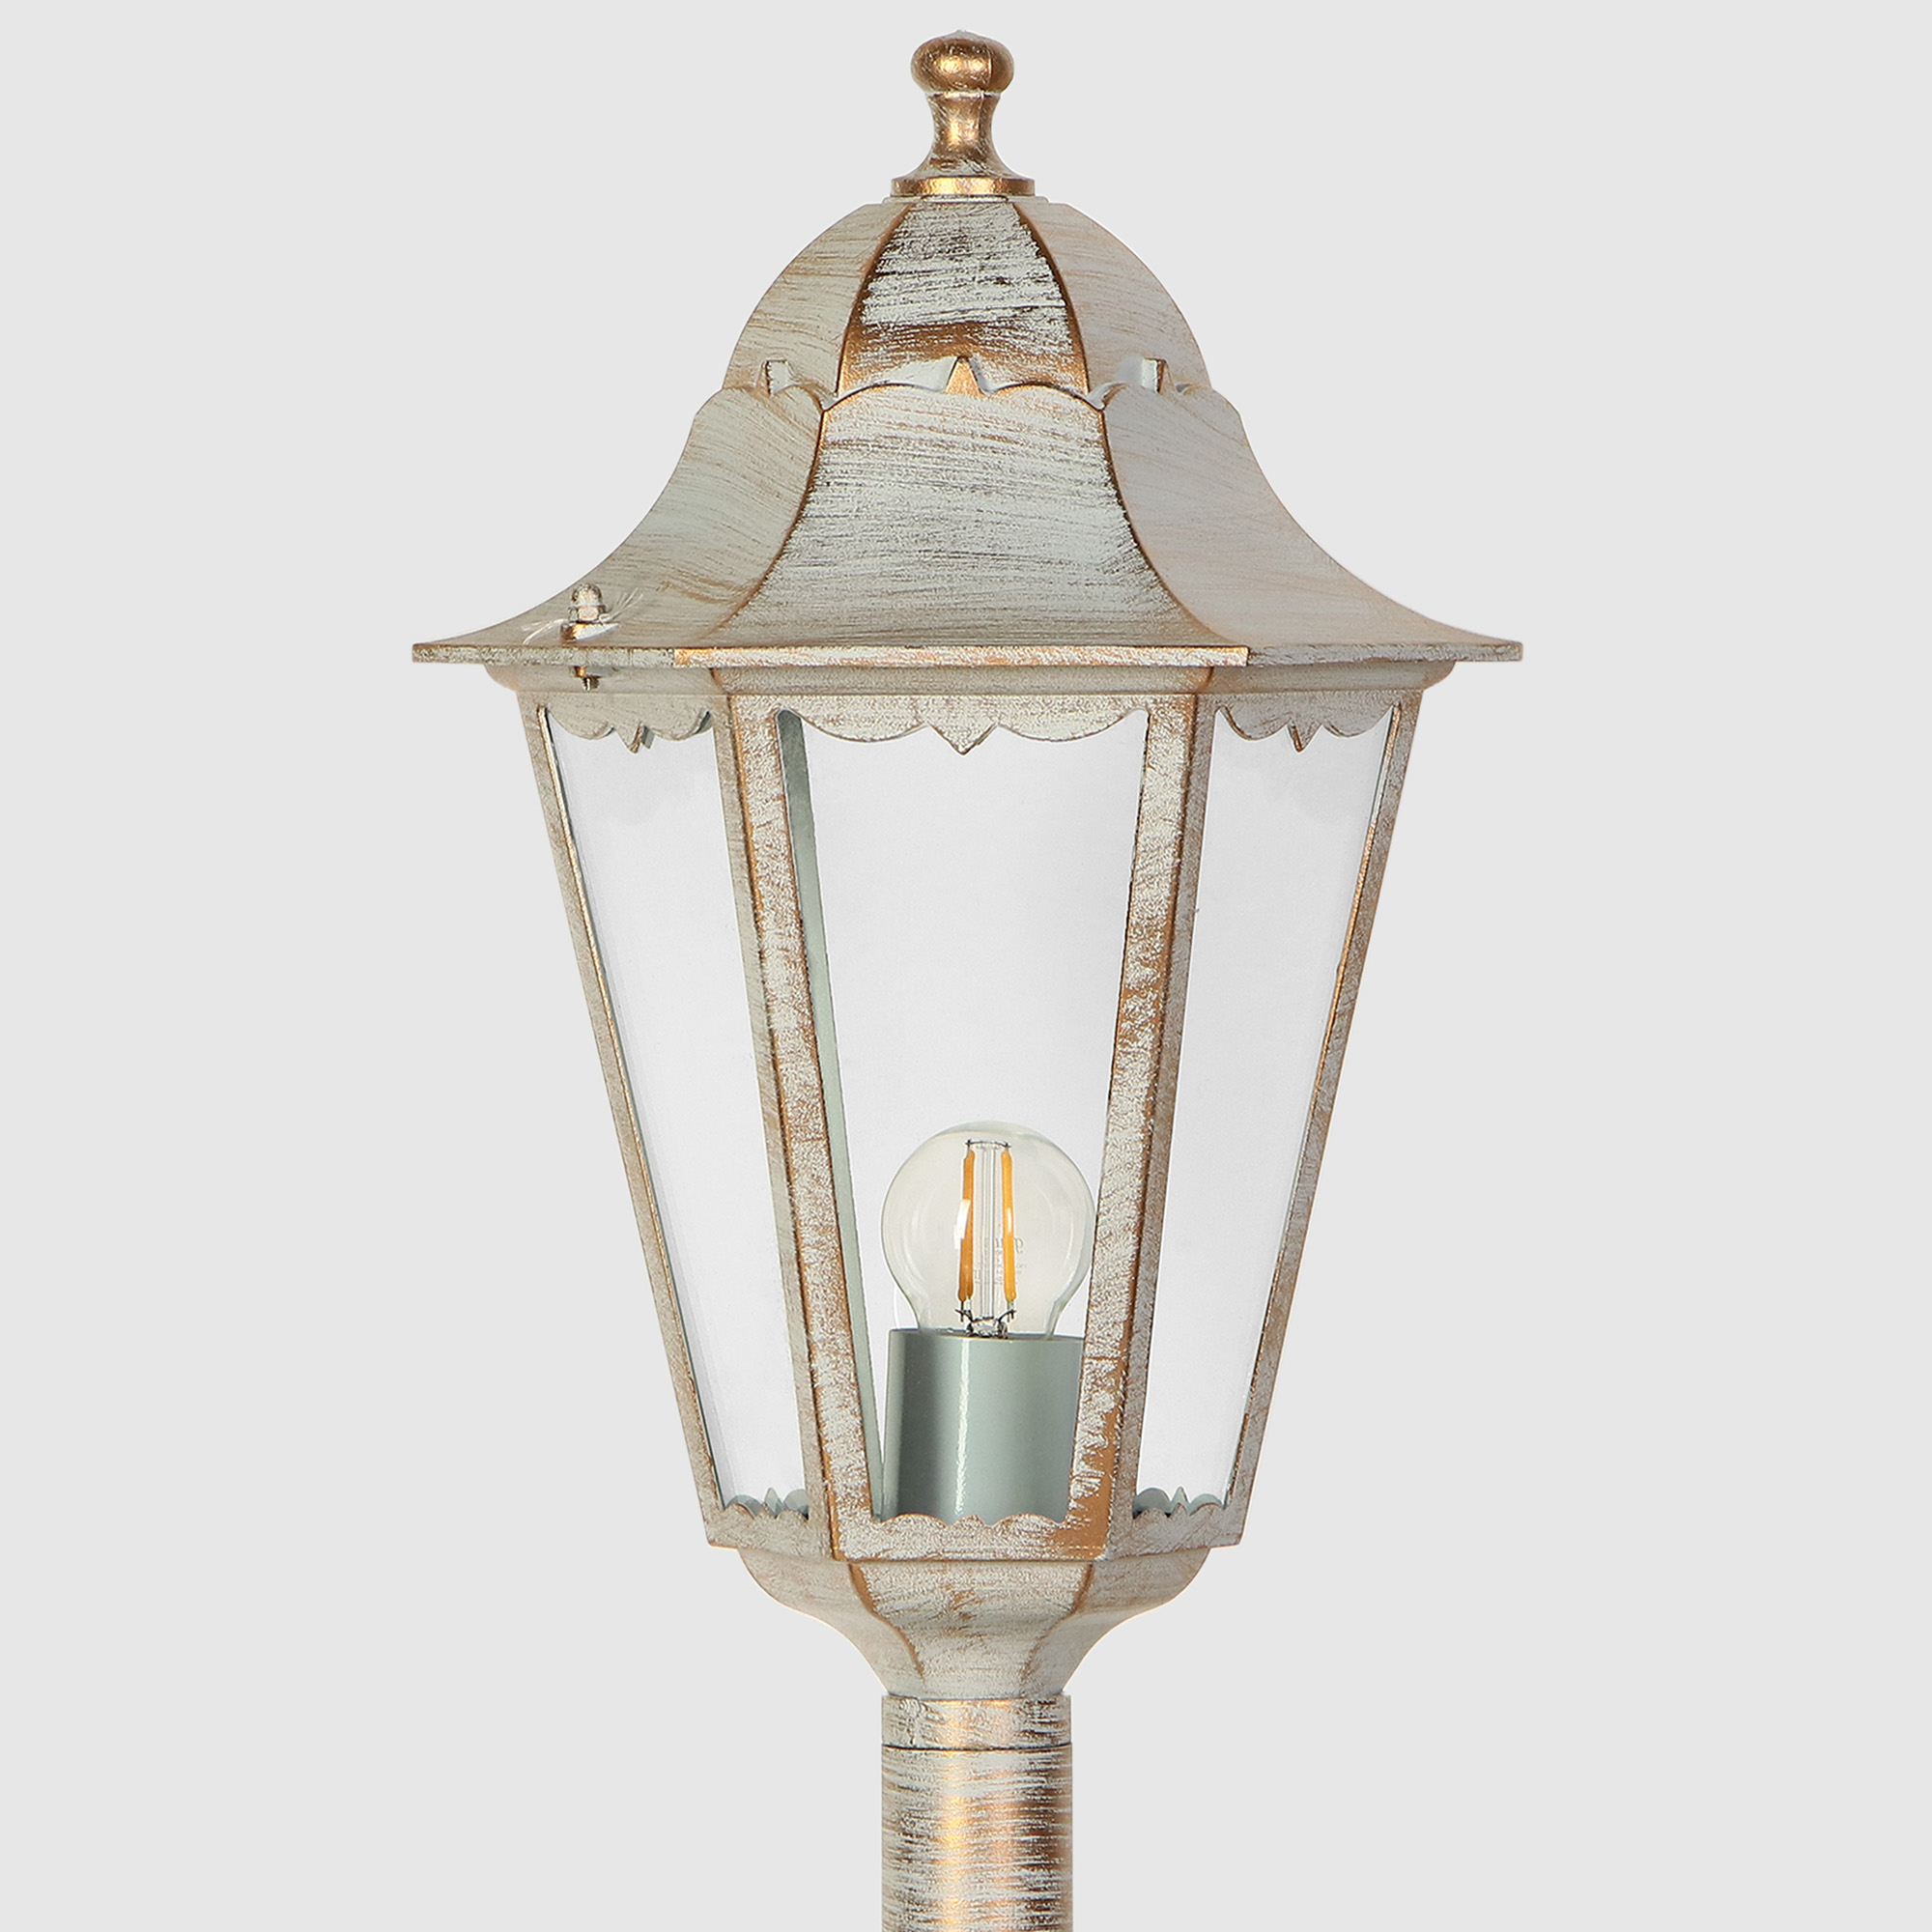 Светильник садовый Amber Lamp 8007LA напольный IP44 E27 100Вт, белое золото, цвет белое золото, прозрачный - фото 3